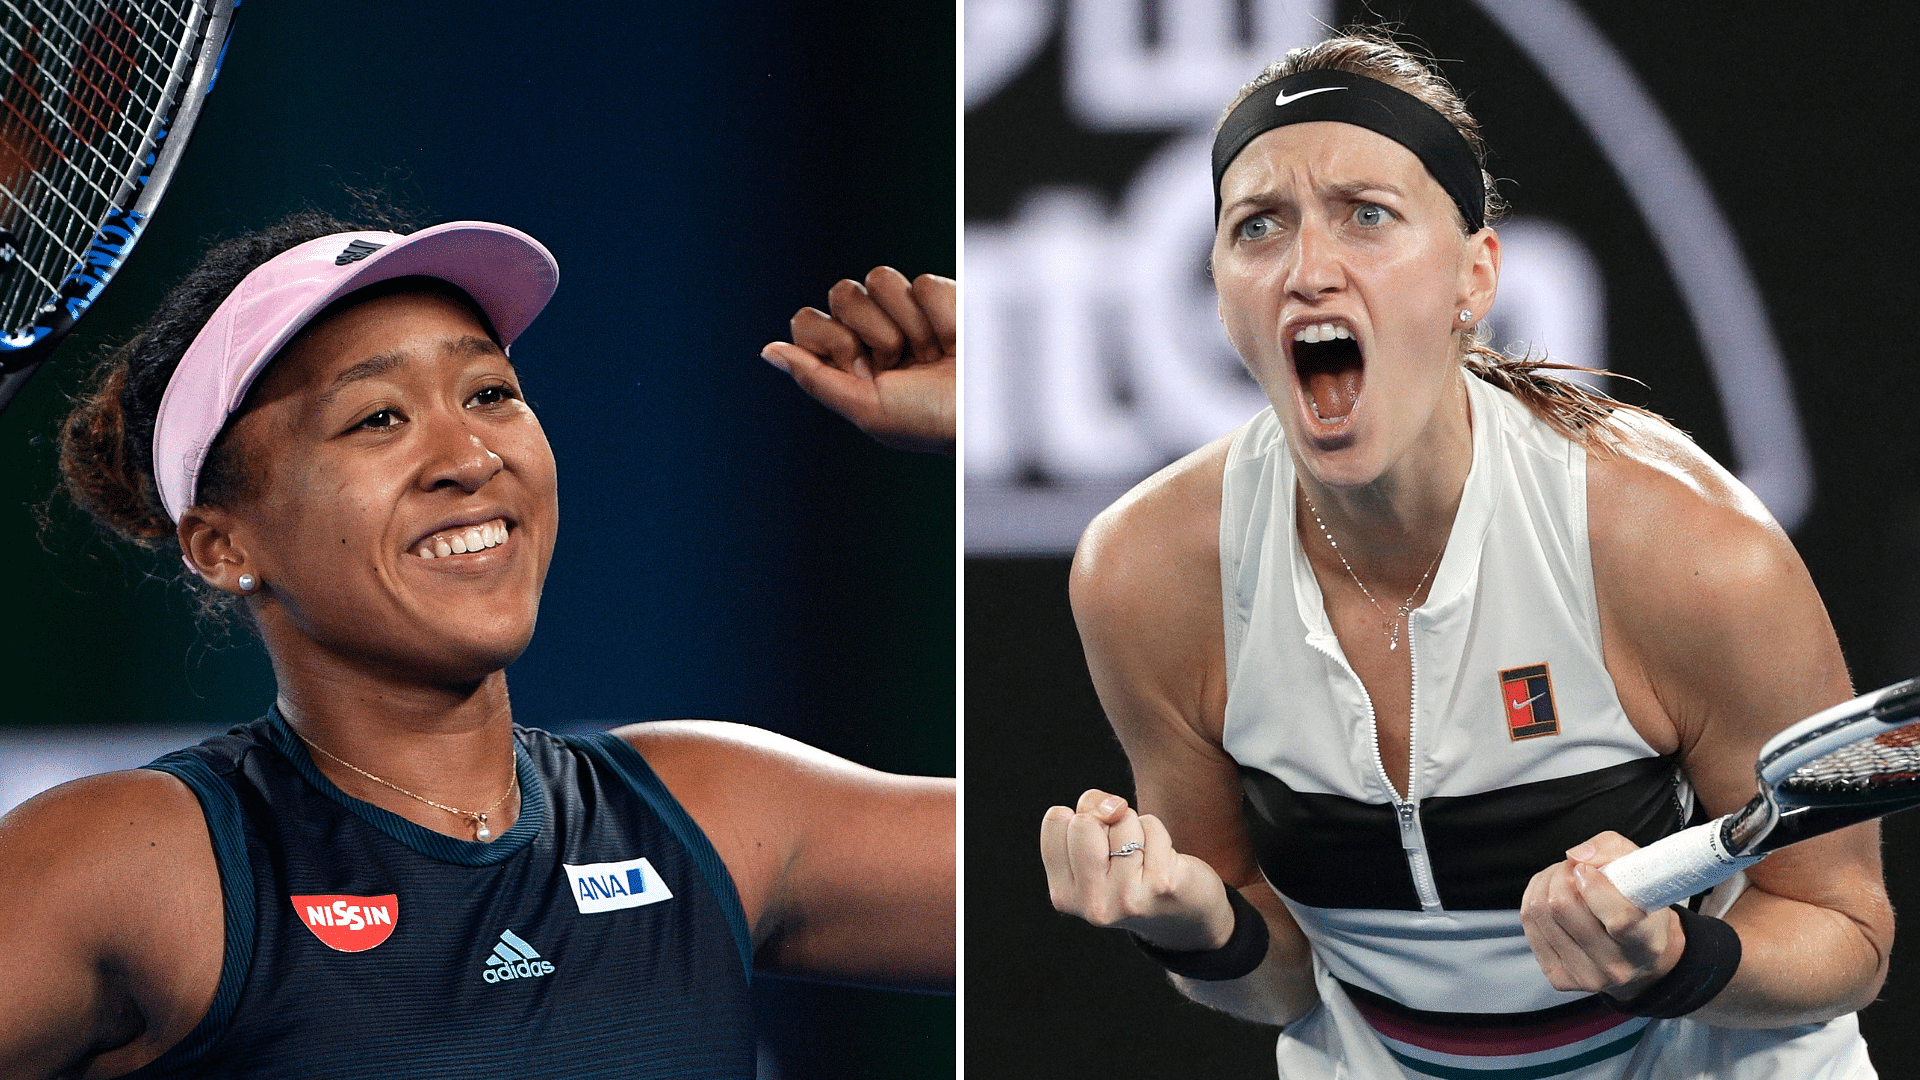 Naomi Osaka and Petra Kvitova will lock horns in the Australian Open 2019 Women’s Singles final on Saturday, 26 January.